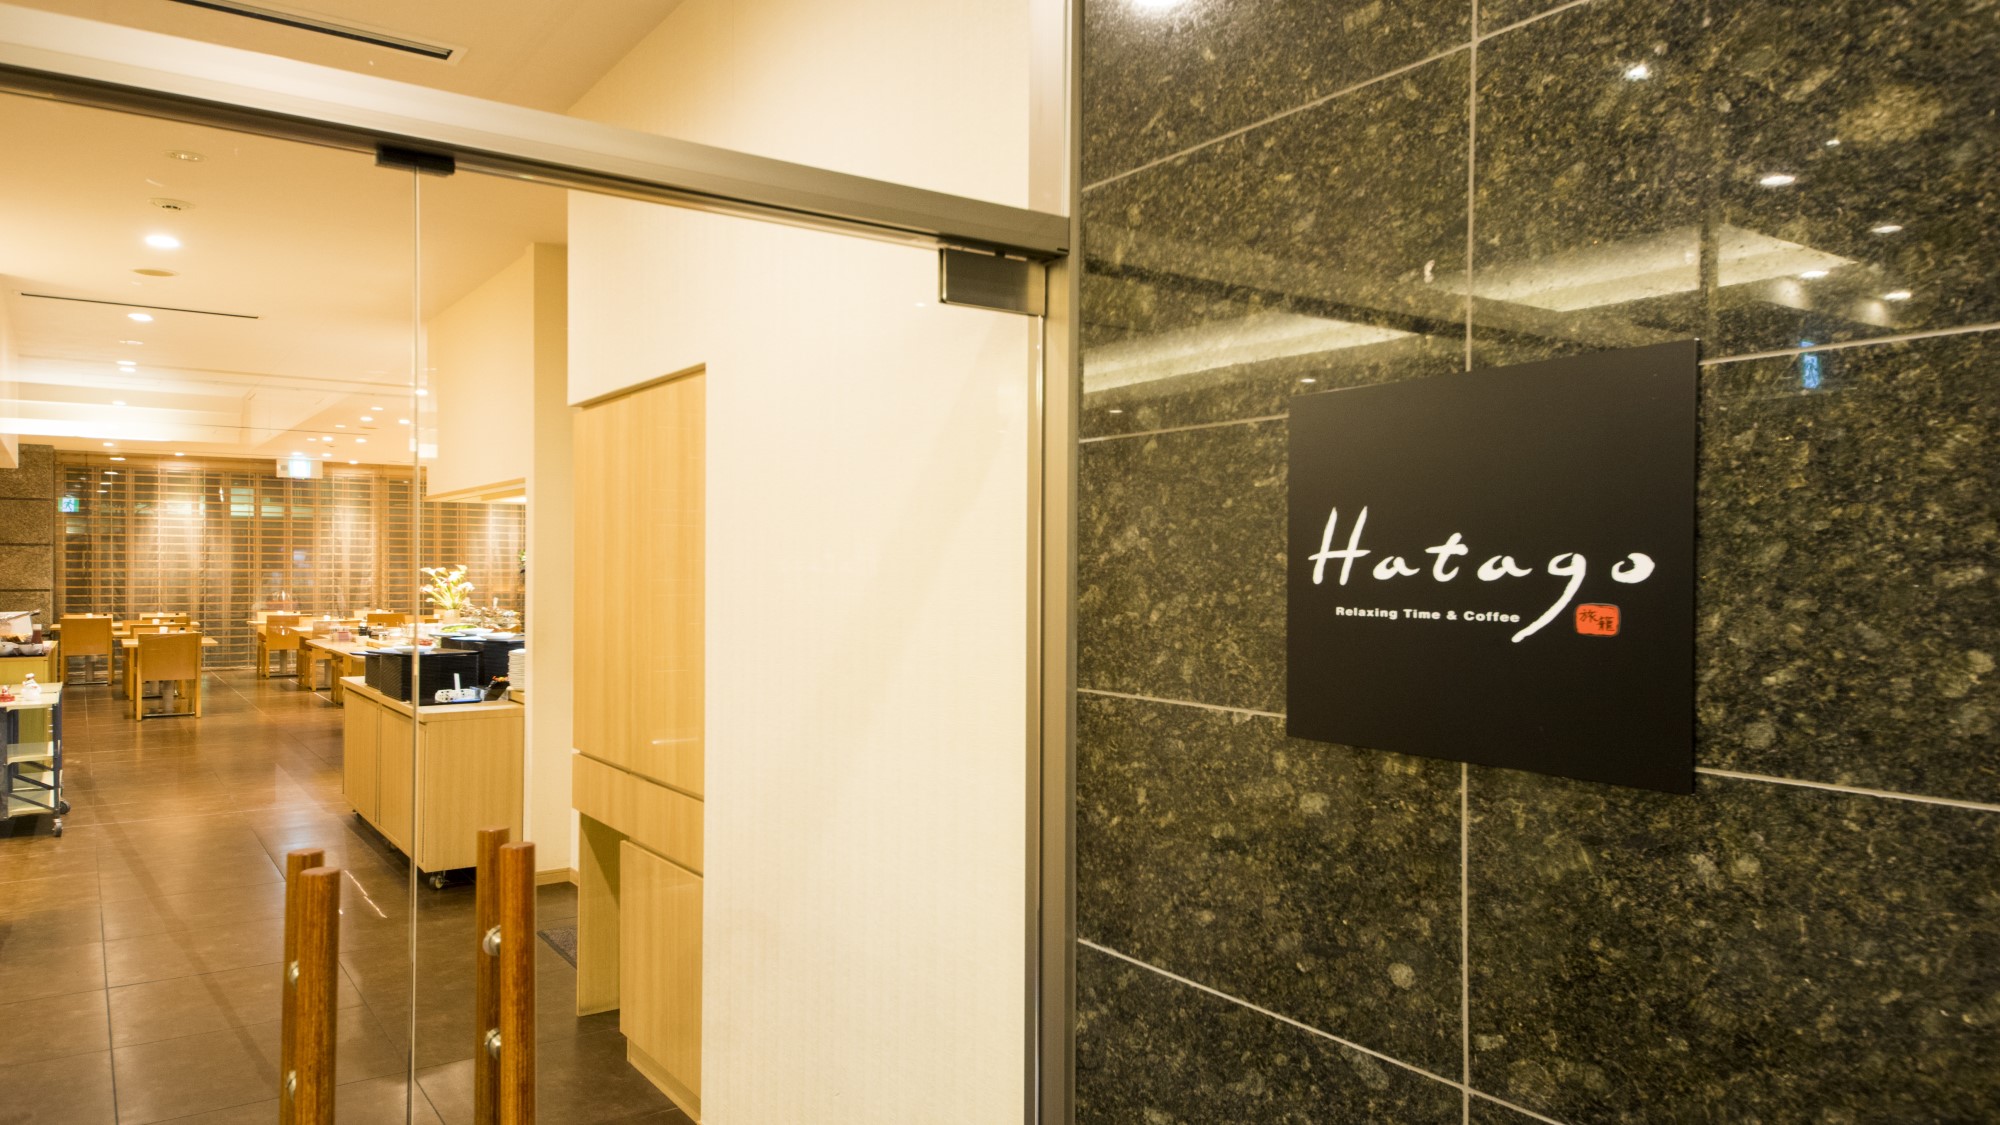 【Hatago】1F・レストラン 営業時間 06:30~09:30 (最終入店 09:00)